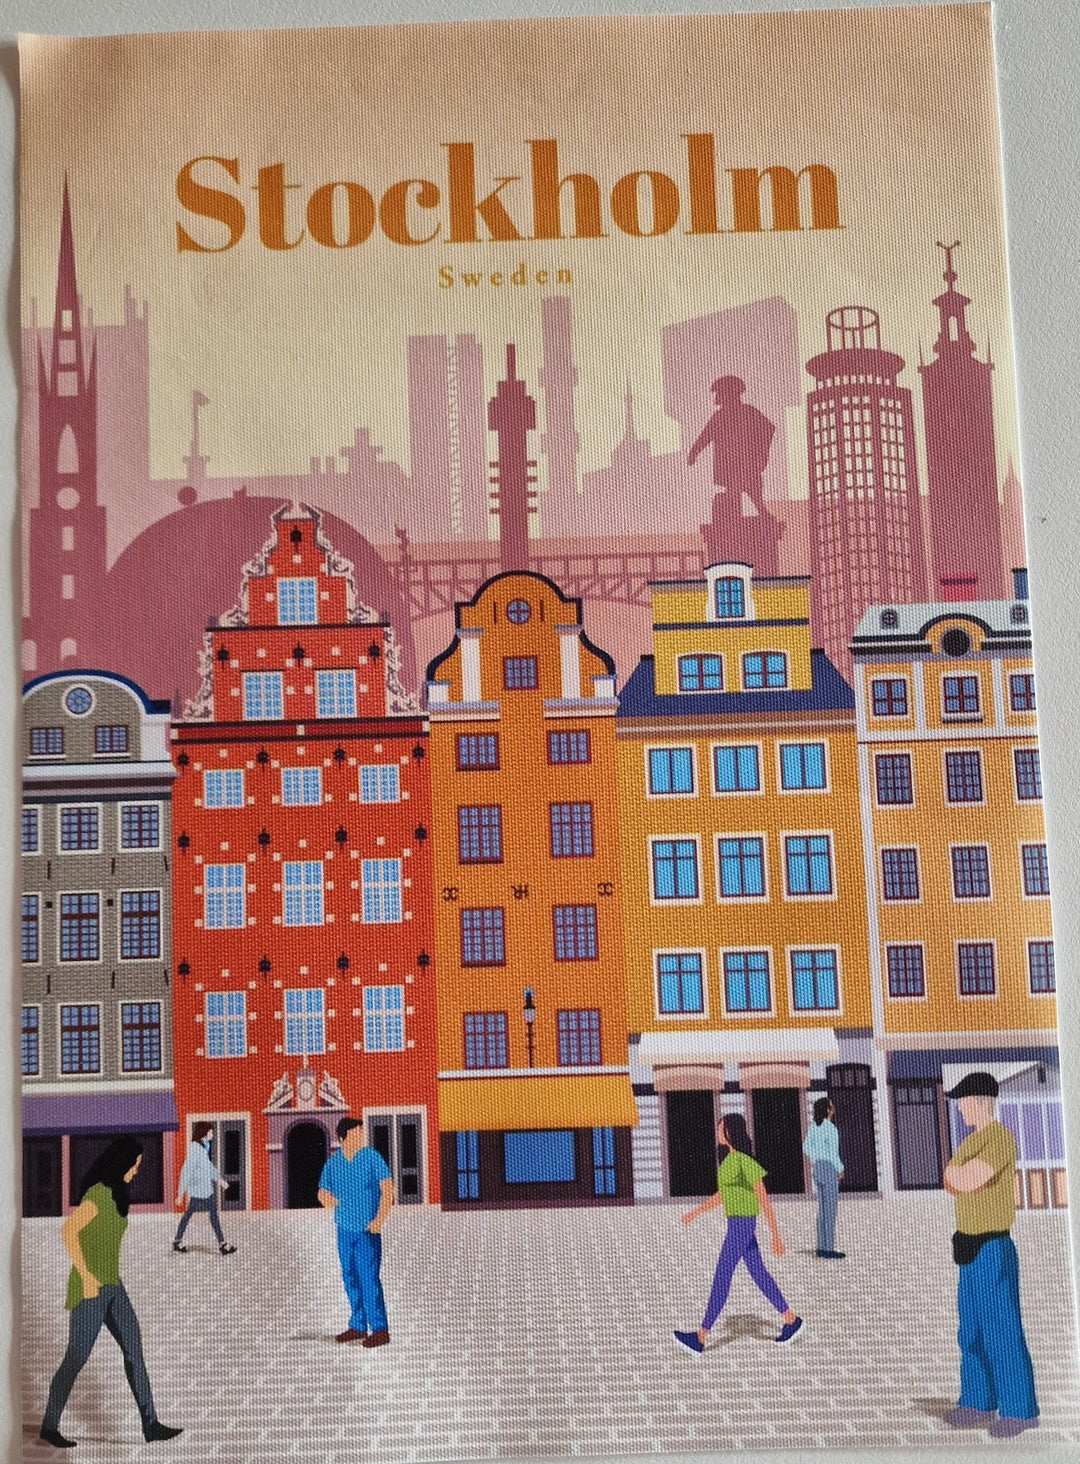 Leinwand-Bild, ohne Rahmen  "Stockholm"